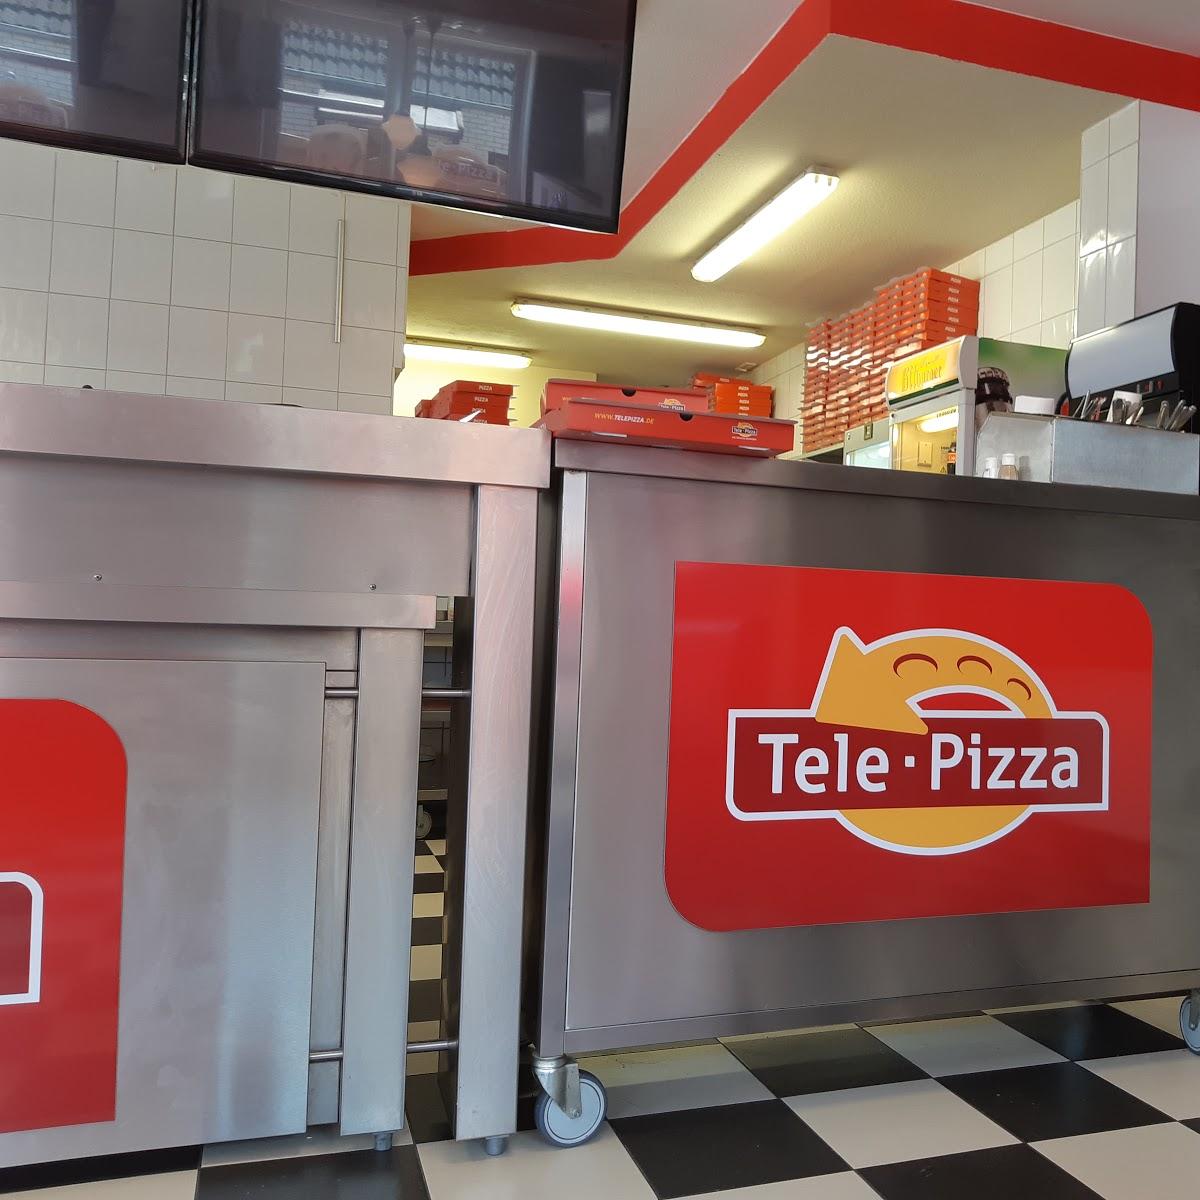 Restaurant "Tele Pizza" in Geestland